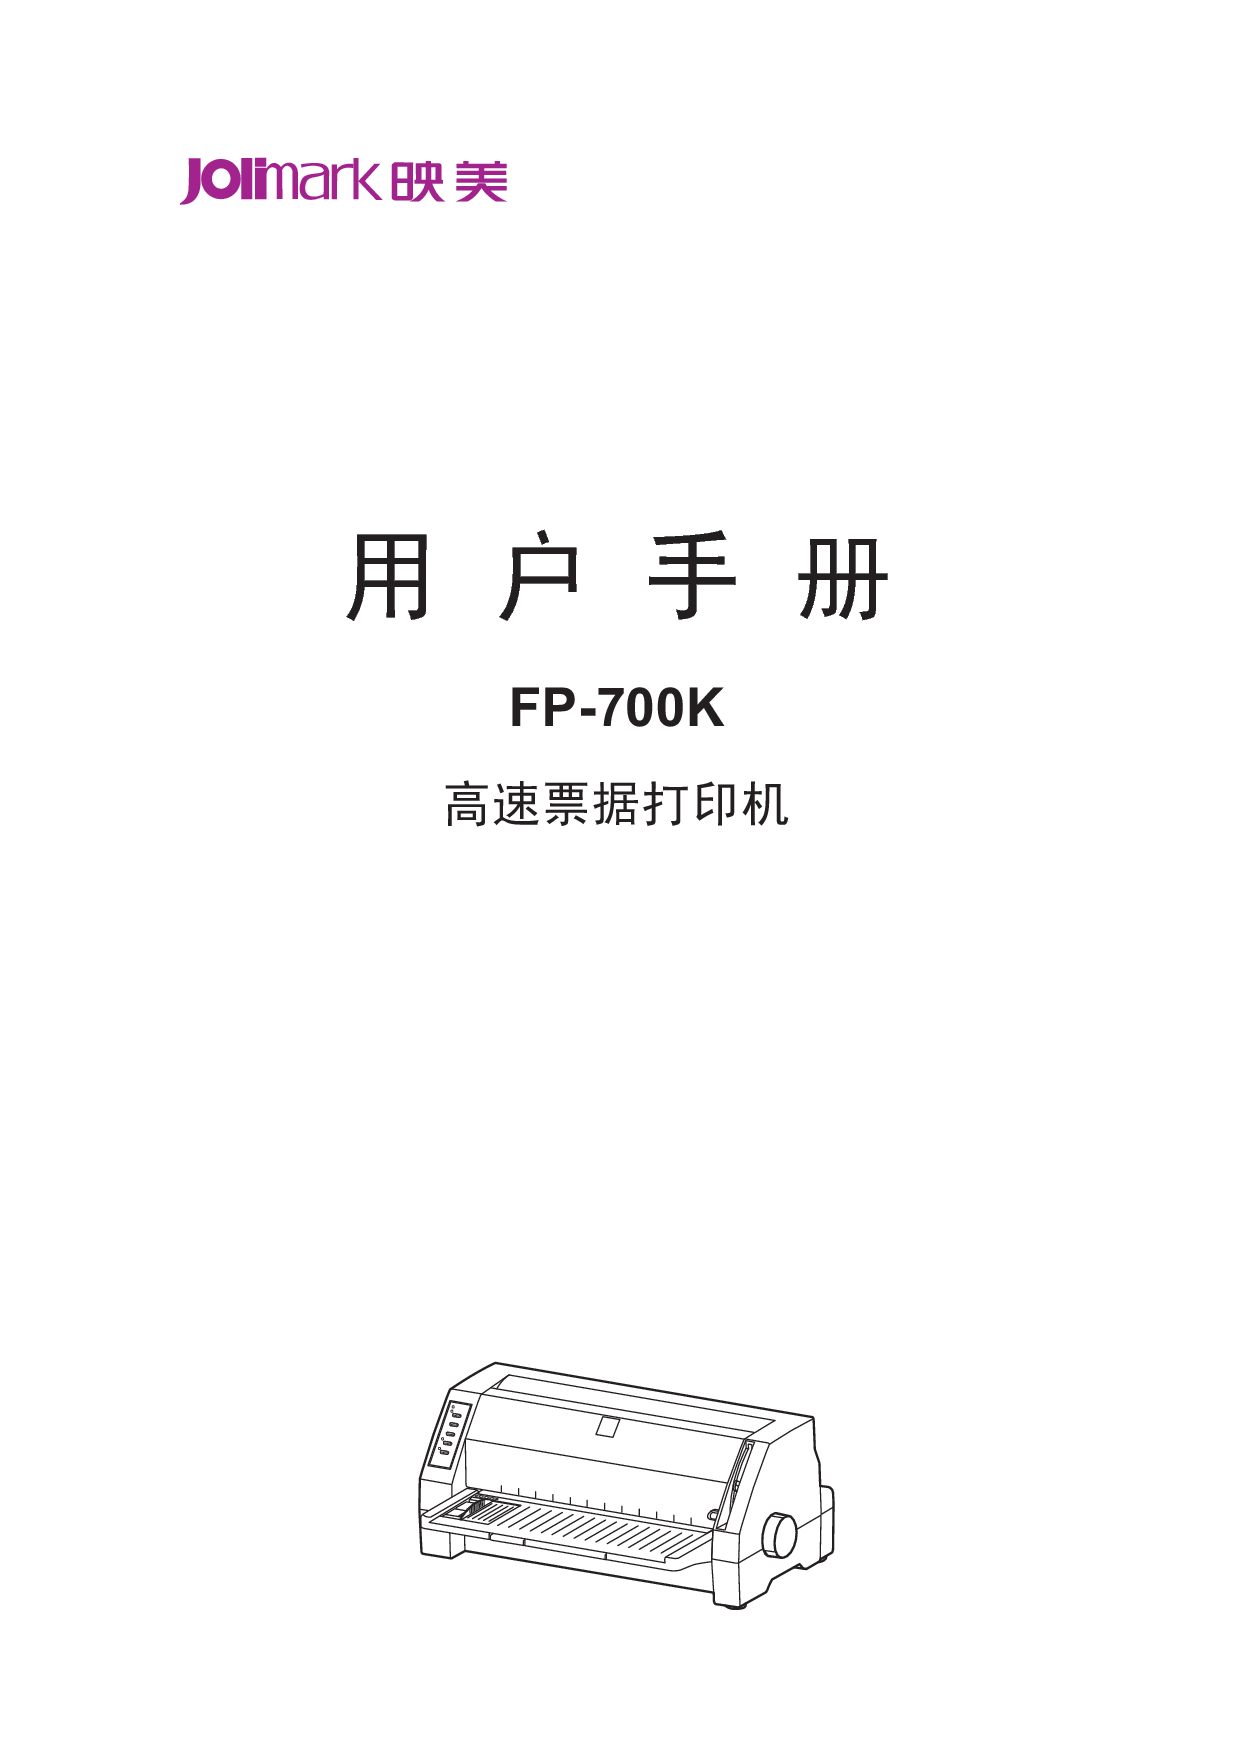 映美 Jolimark FP-700K 用户手册 封面